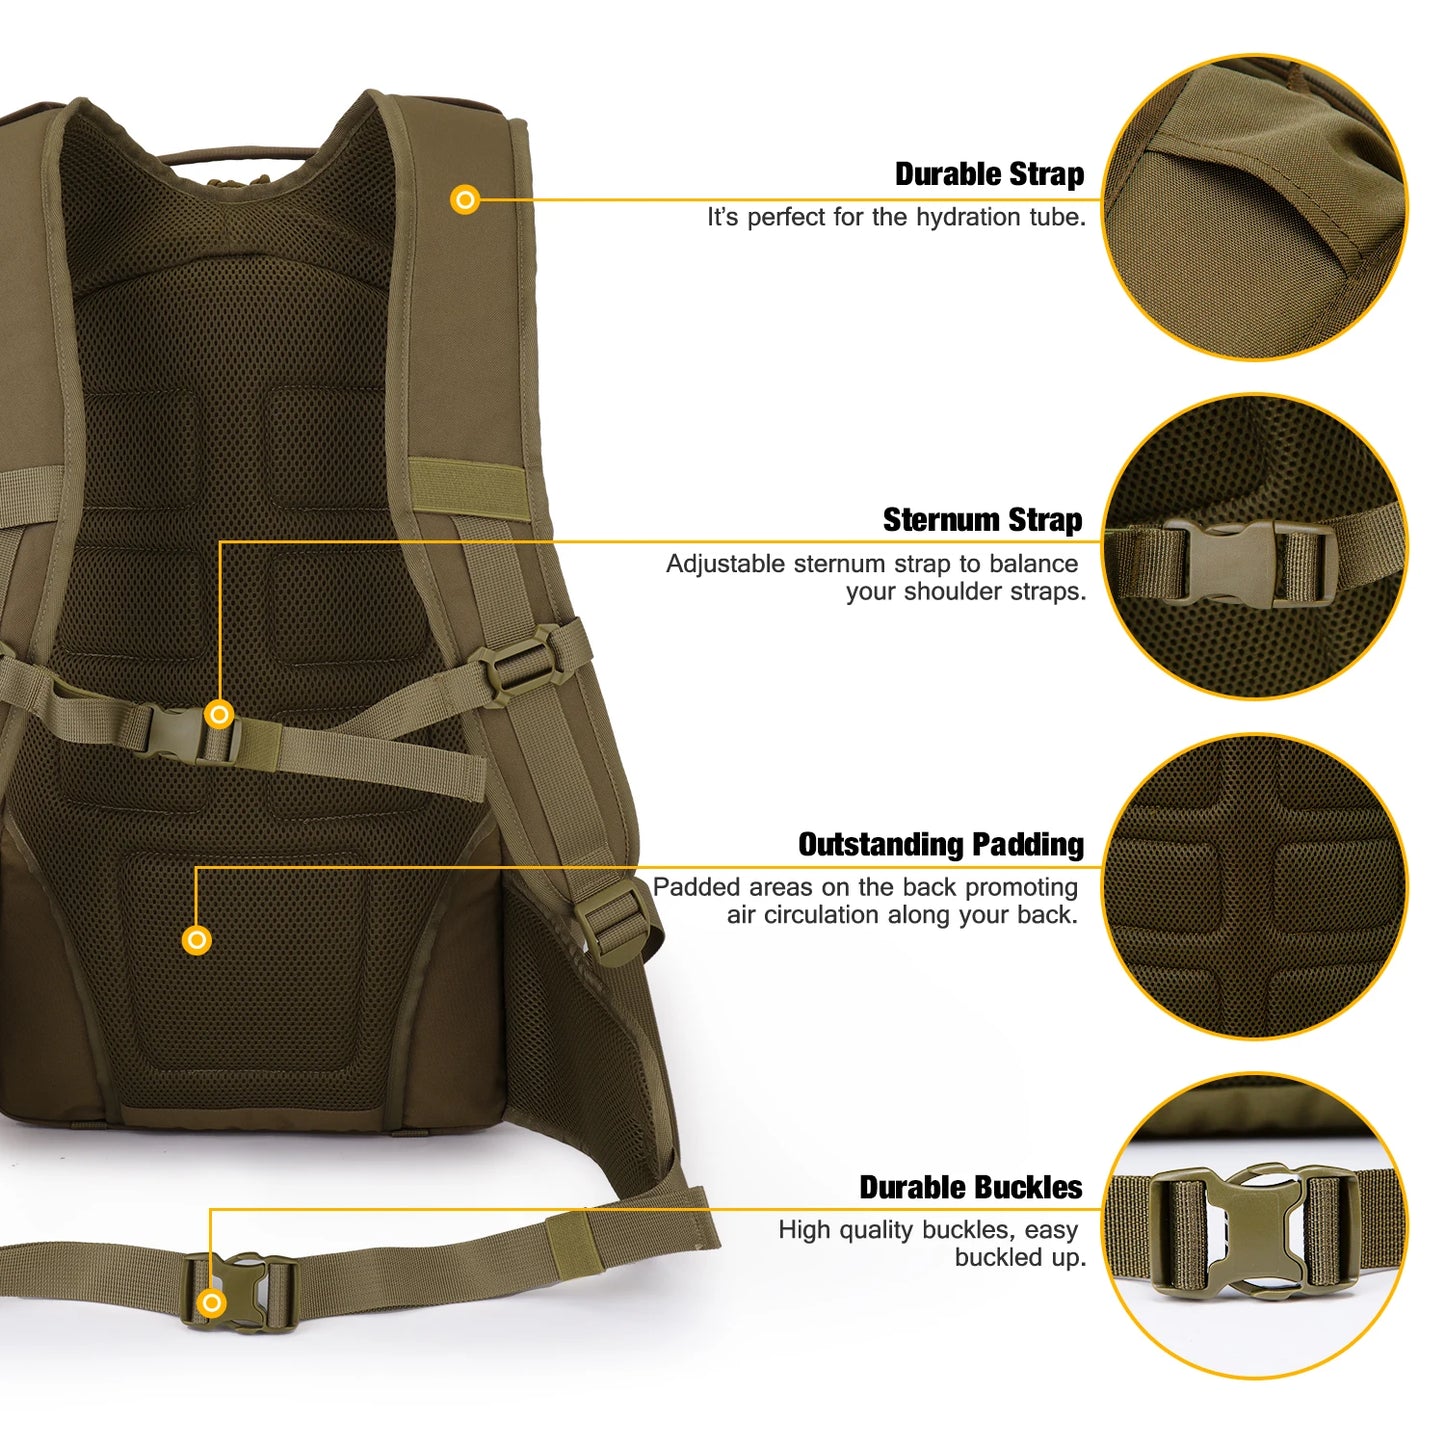 Mardingtop taktický batoh s dešťovým pokrývkem 35L denního batohu